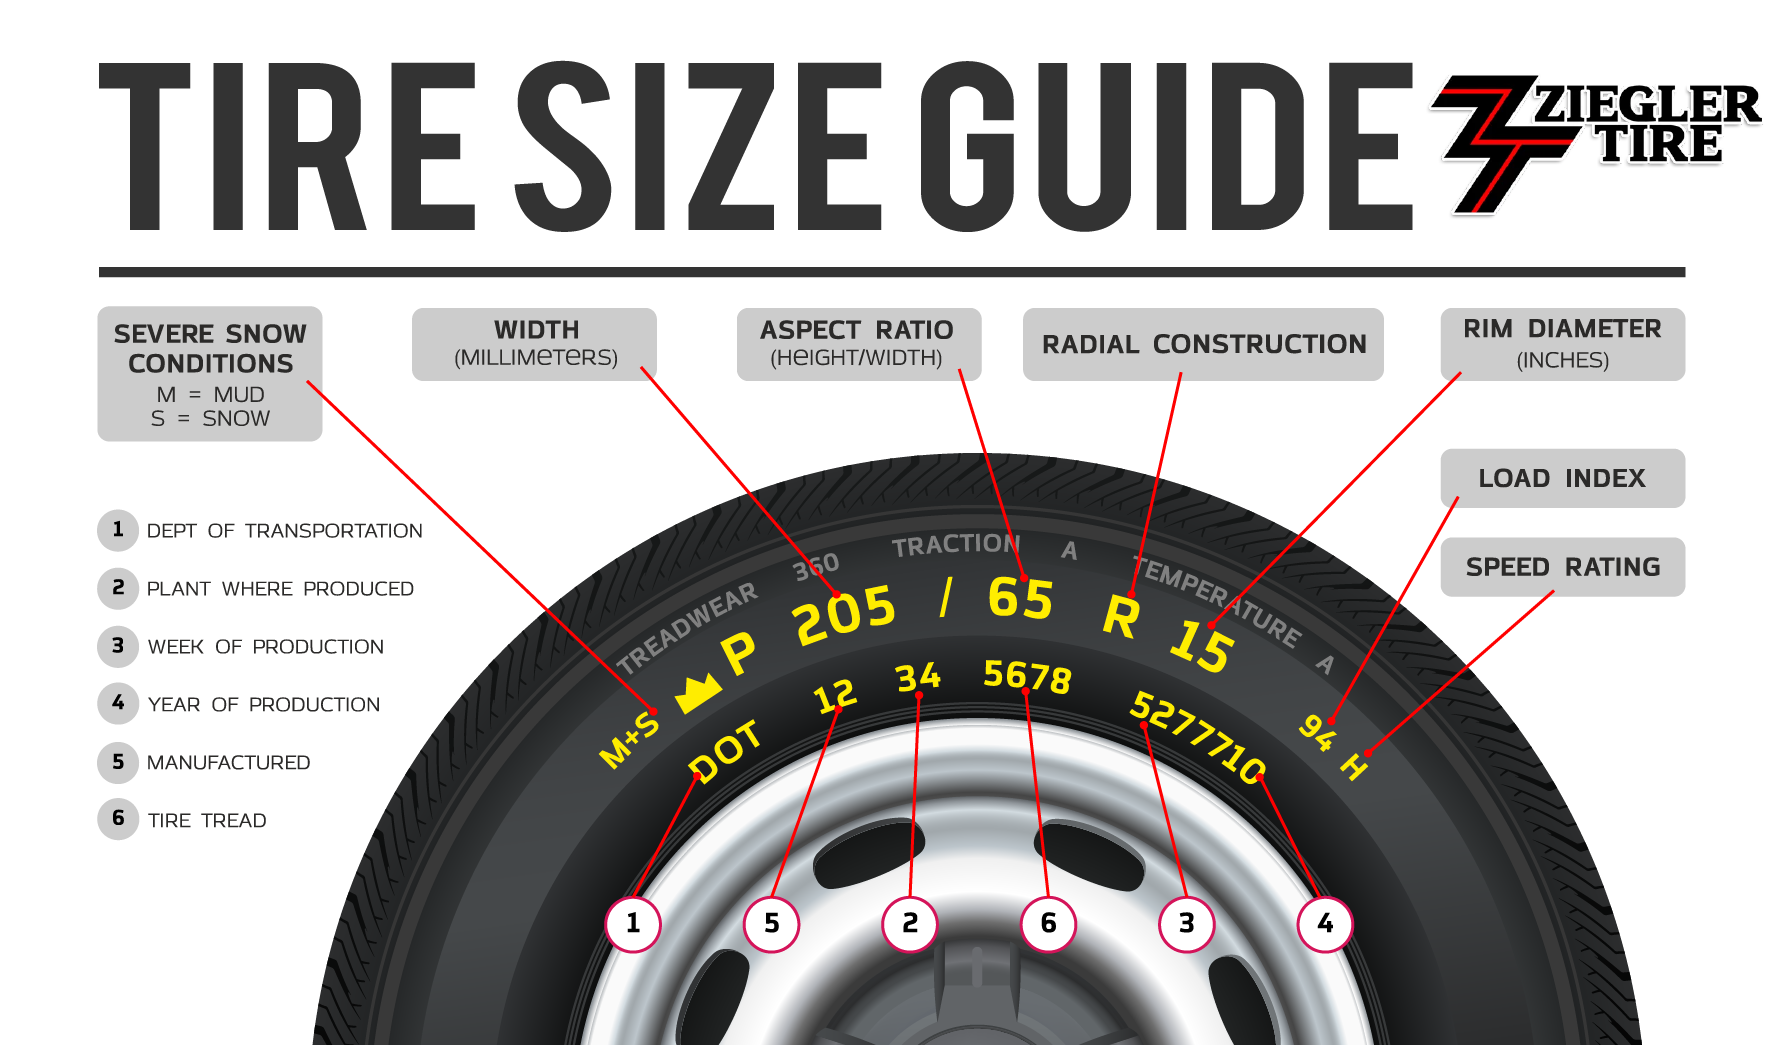 Ziegler Tire - Tire Size Guide